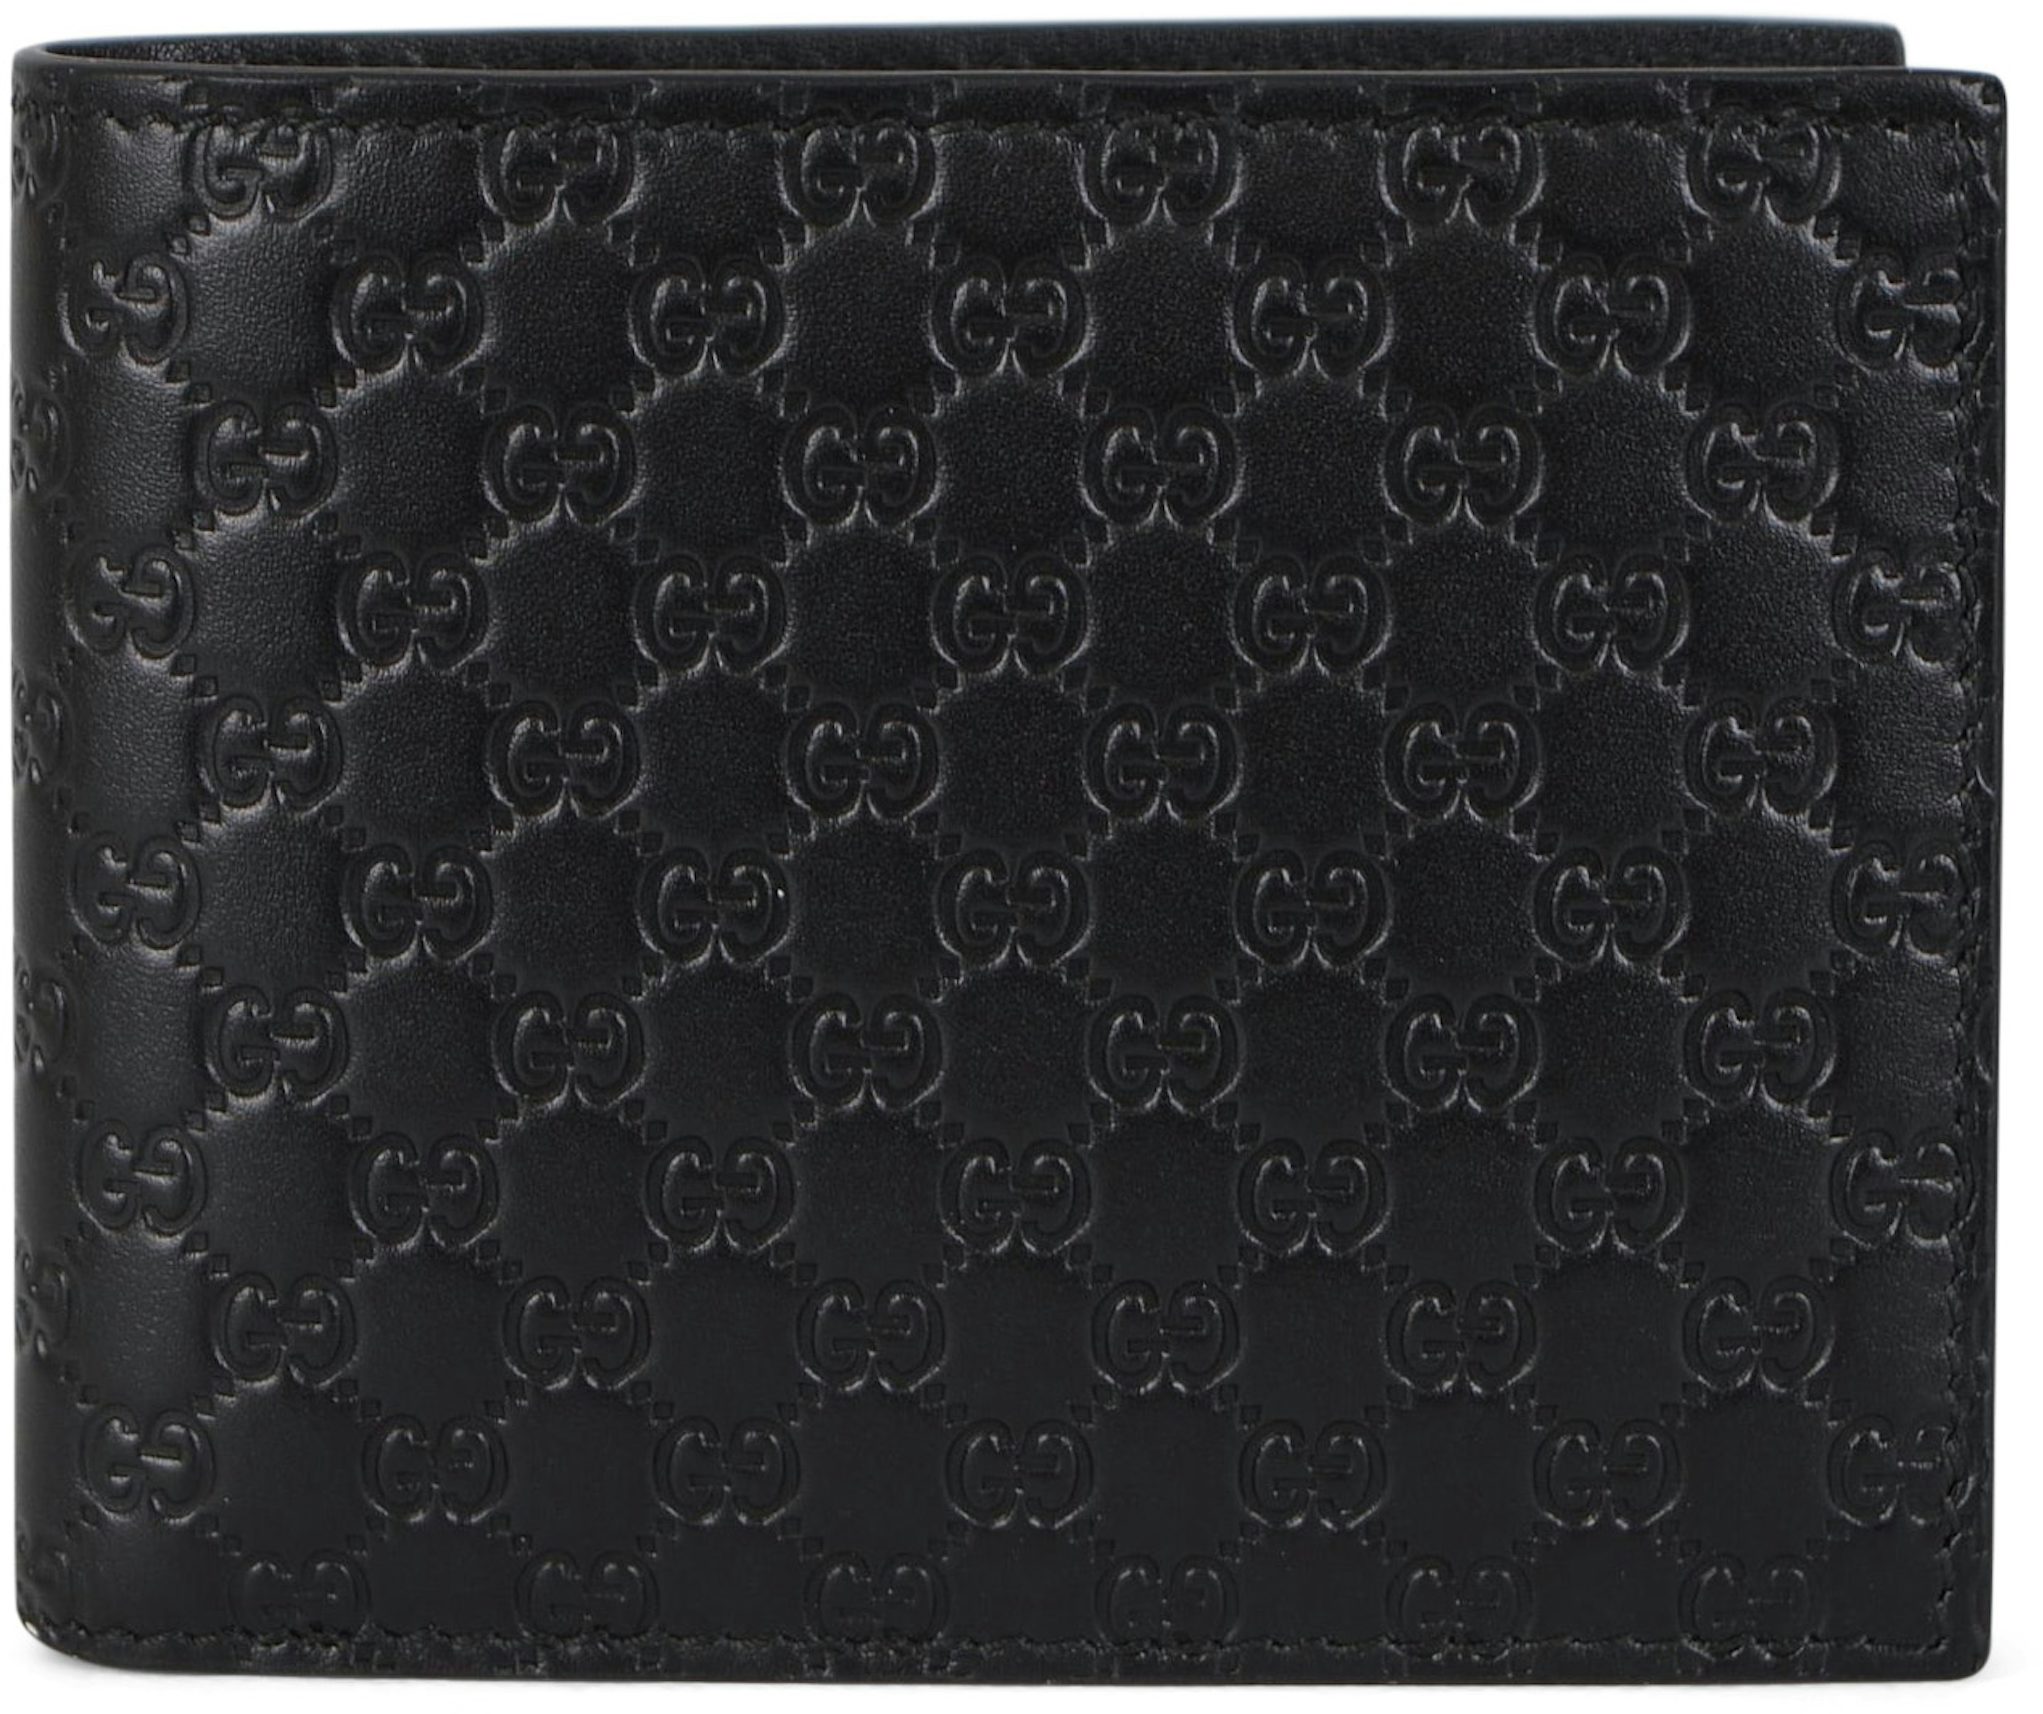 Gucci Women's Leather Micro GG Guccissima Mini Crossbody Wallet Bag Purse  (Black)